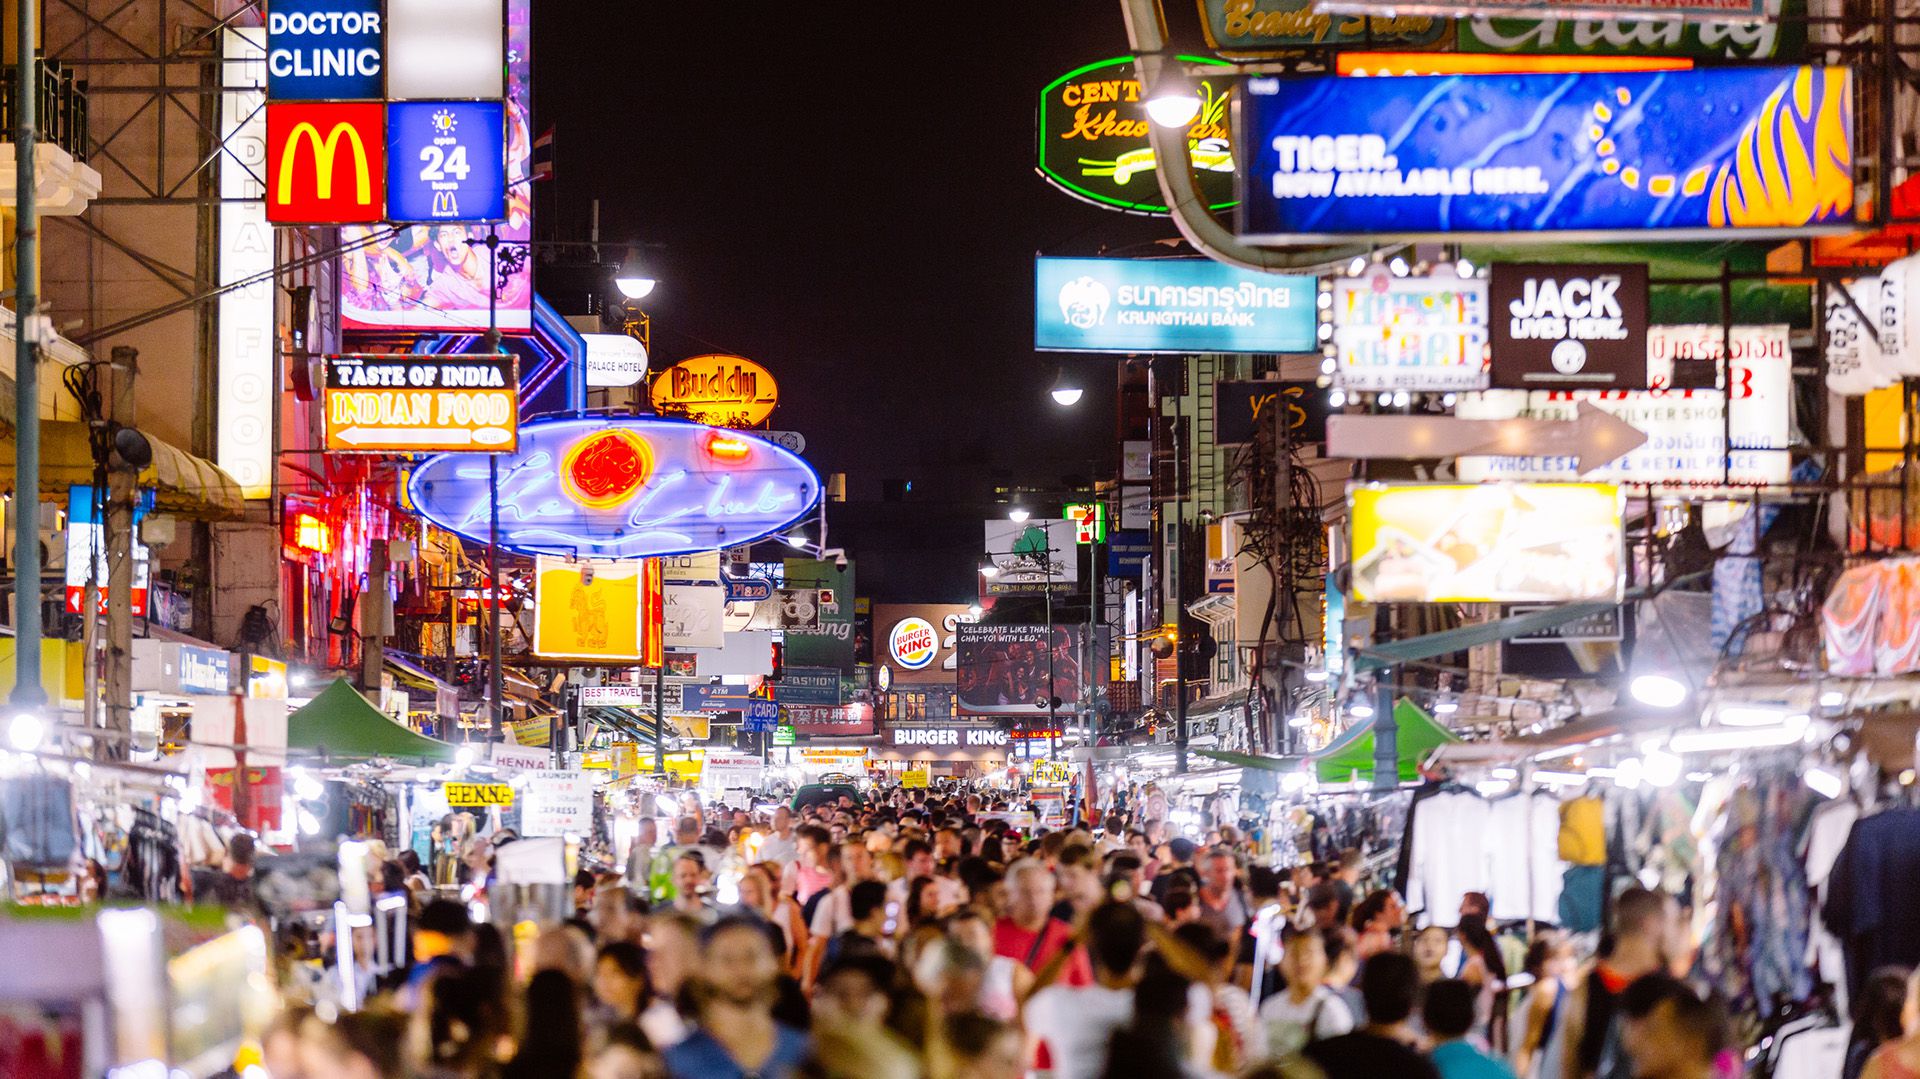 Esta parte de Bangkok suele ser muy concurrida por turistas y ciudadanos que van de compras o de paseo, generando grandes aglomeraciones (Getty)